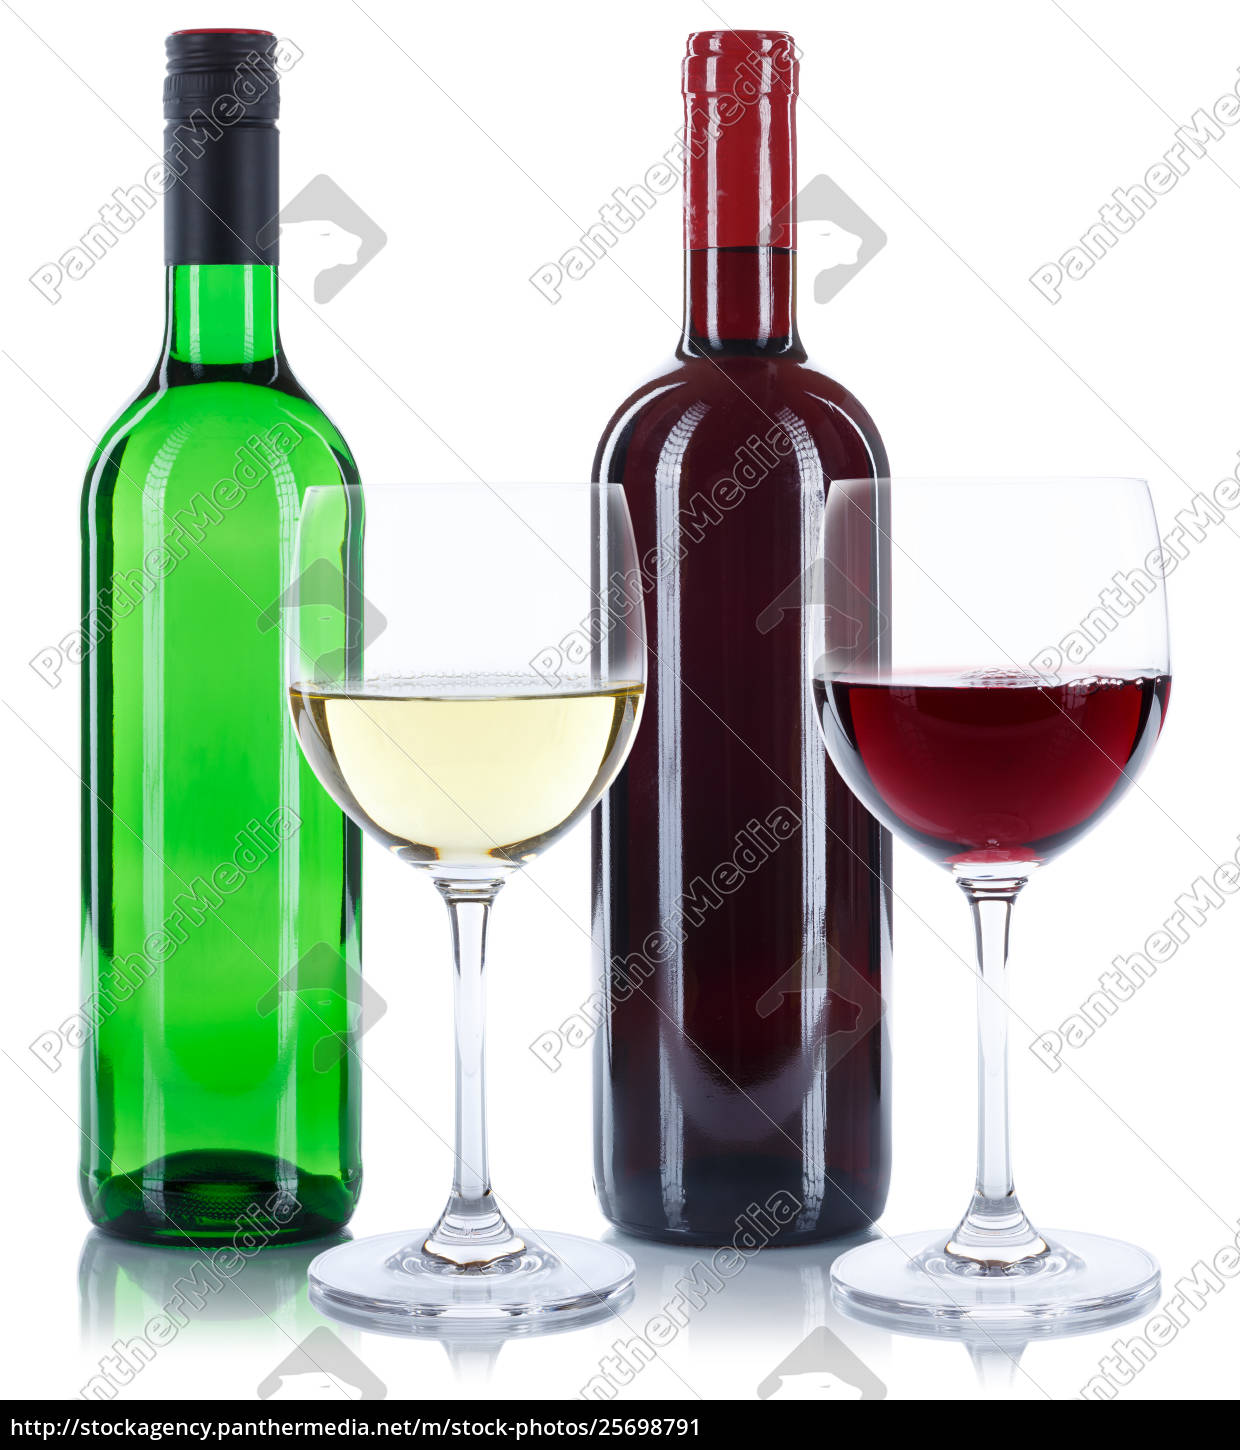 Wein Flaschen Glas Weinflaschen Weinglas Rotwein Lizenzfreies Bild Bildagentur Panthermedia